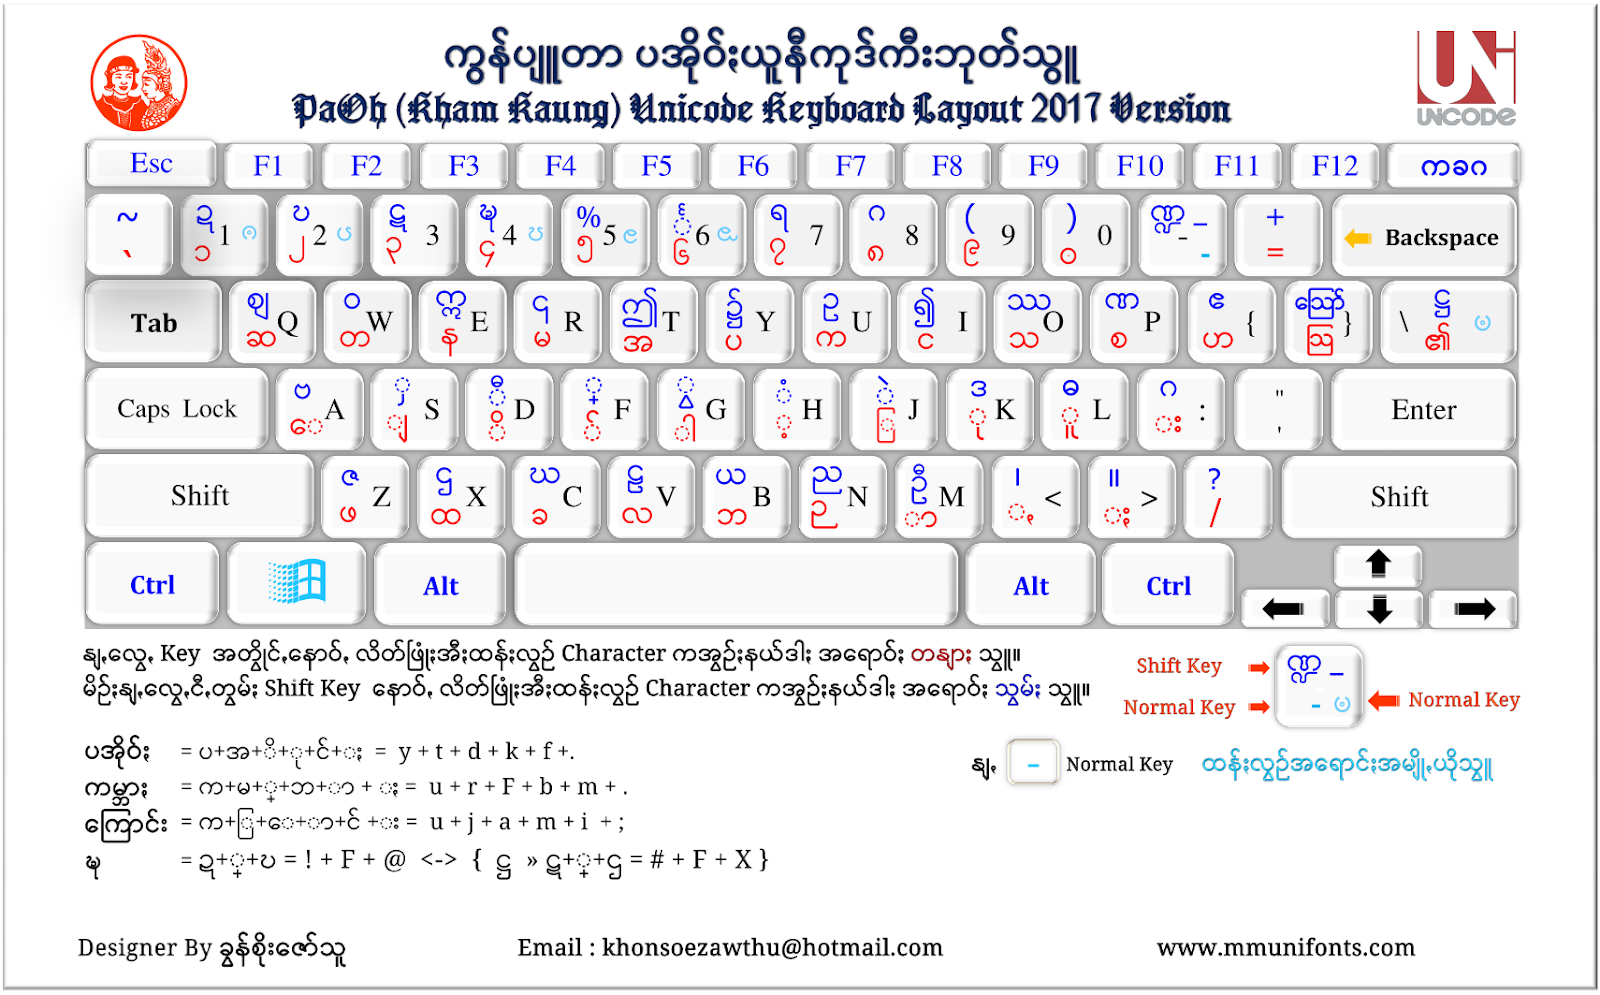 Виндовс 11 раскладка клавиатуры. Раскладка клавиатуры Windows. Бирманская клавиатура. Раскладка клавиатуры виндовс 10. Раскладка клавиатуры русско-английская виндовс 10.